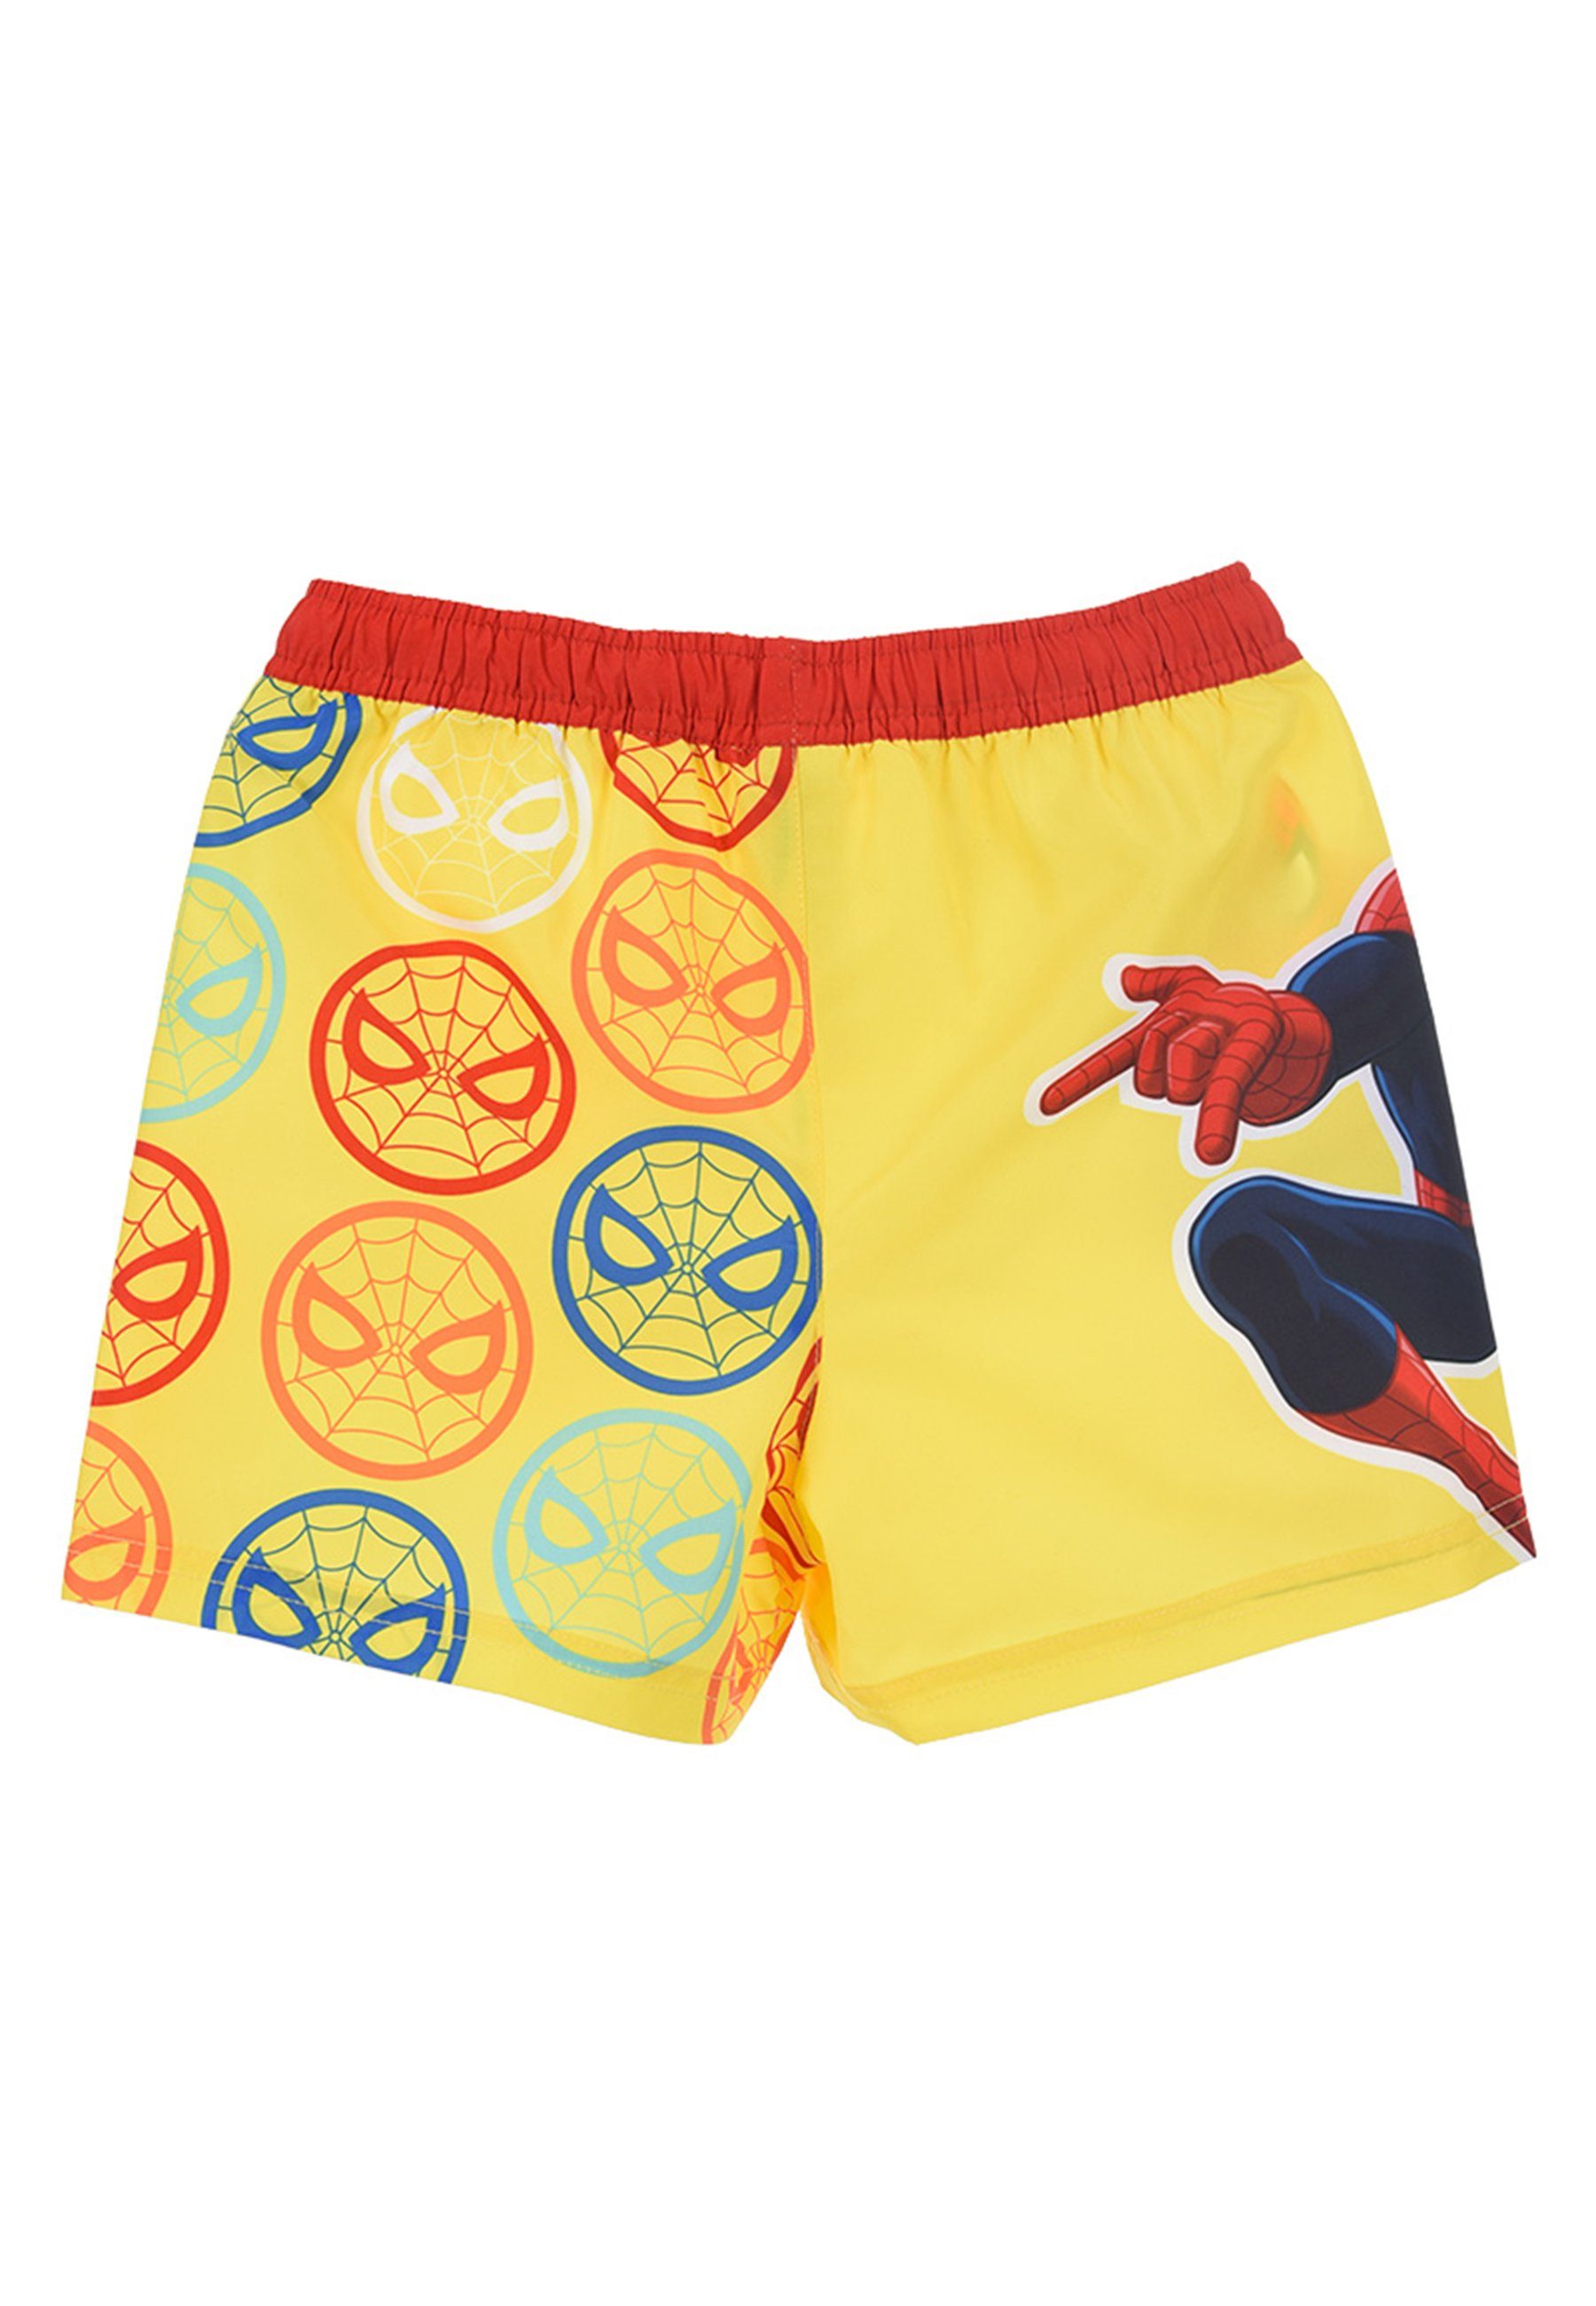 Spiderman Badeshorts Jungen Badehose Bermuda-Shorts Gelb Marvel Badepants Kinder